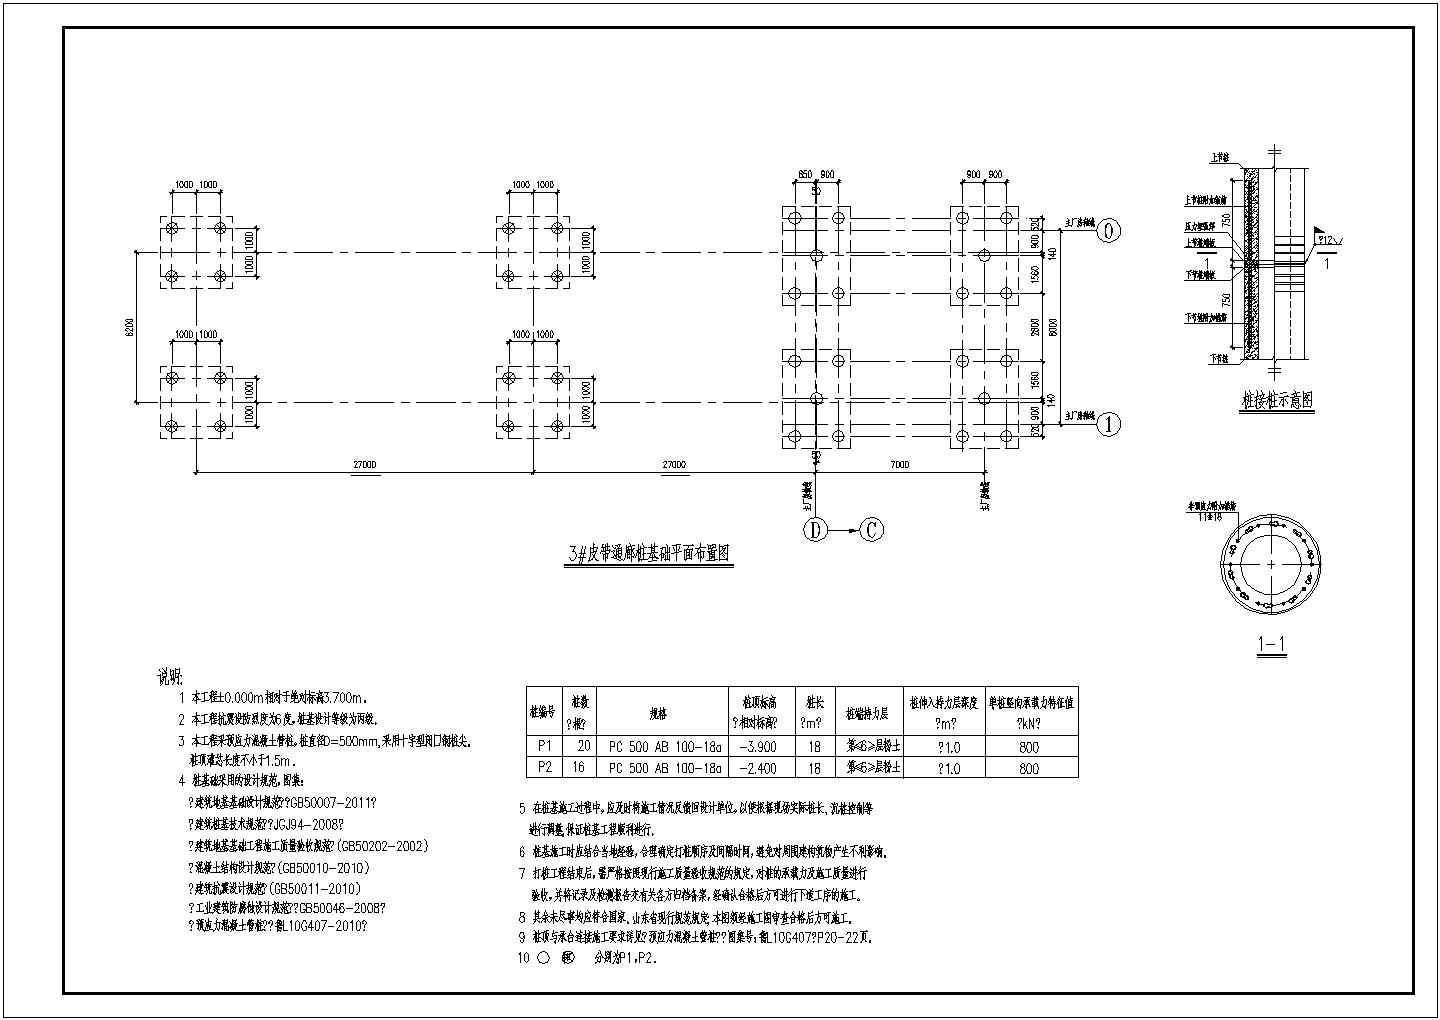 福州三跨钢结构通廊详细建筑施工图